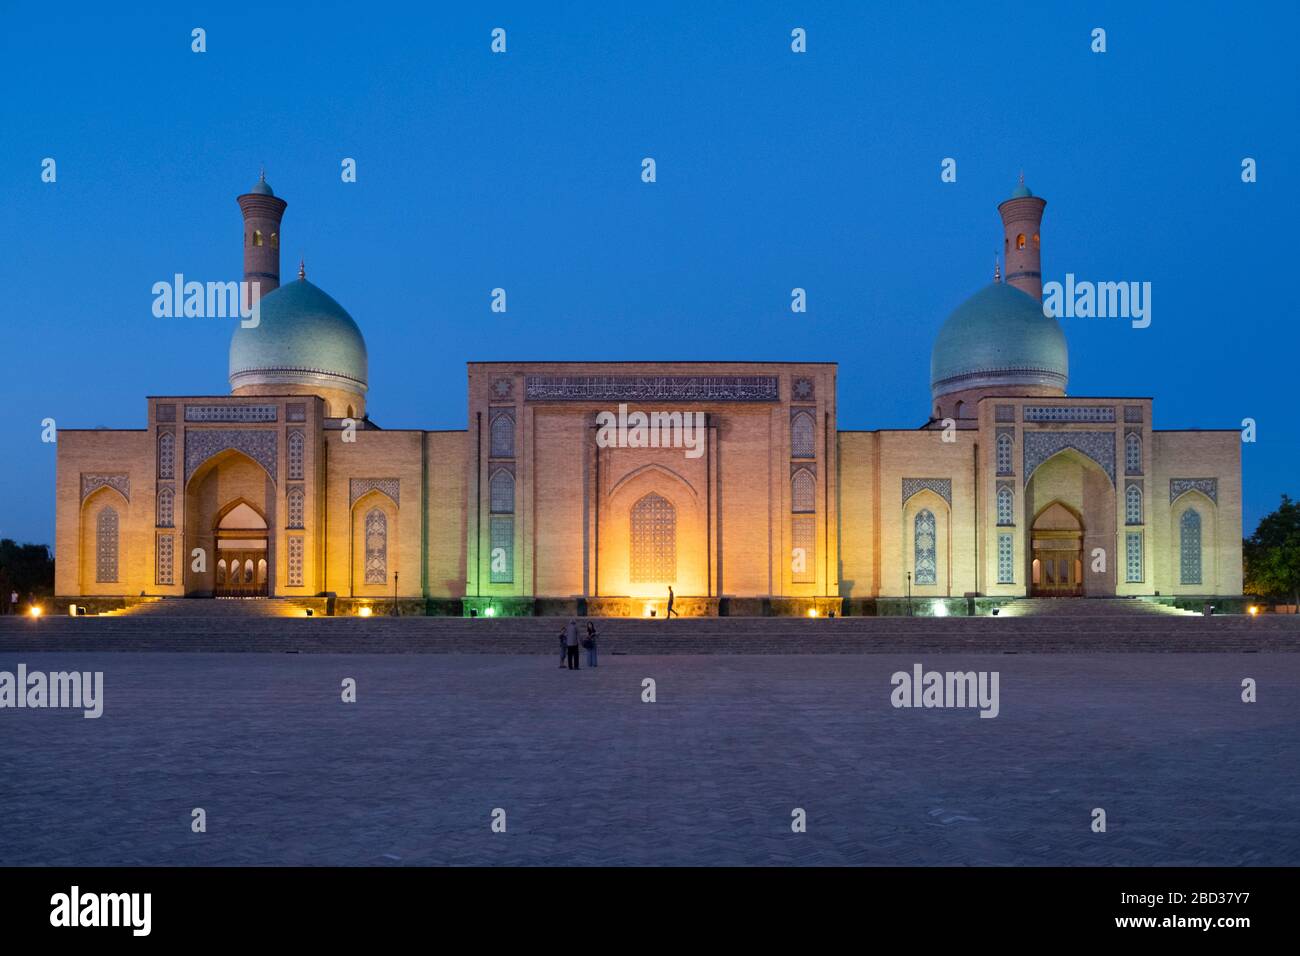 Night view of Hast (Hazrati) Imam in Tashkent, Uzbekistan Stock Photo